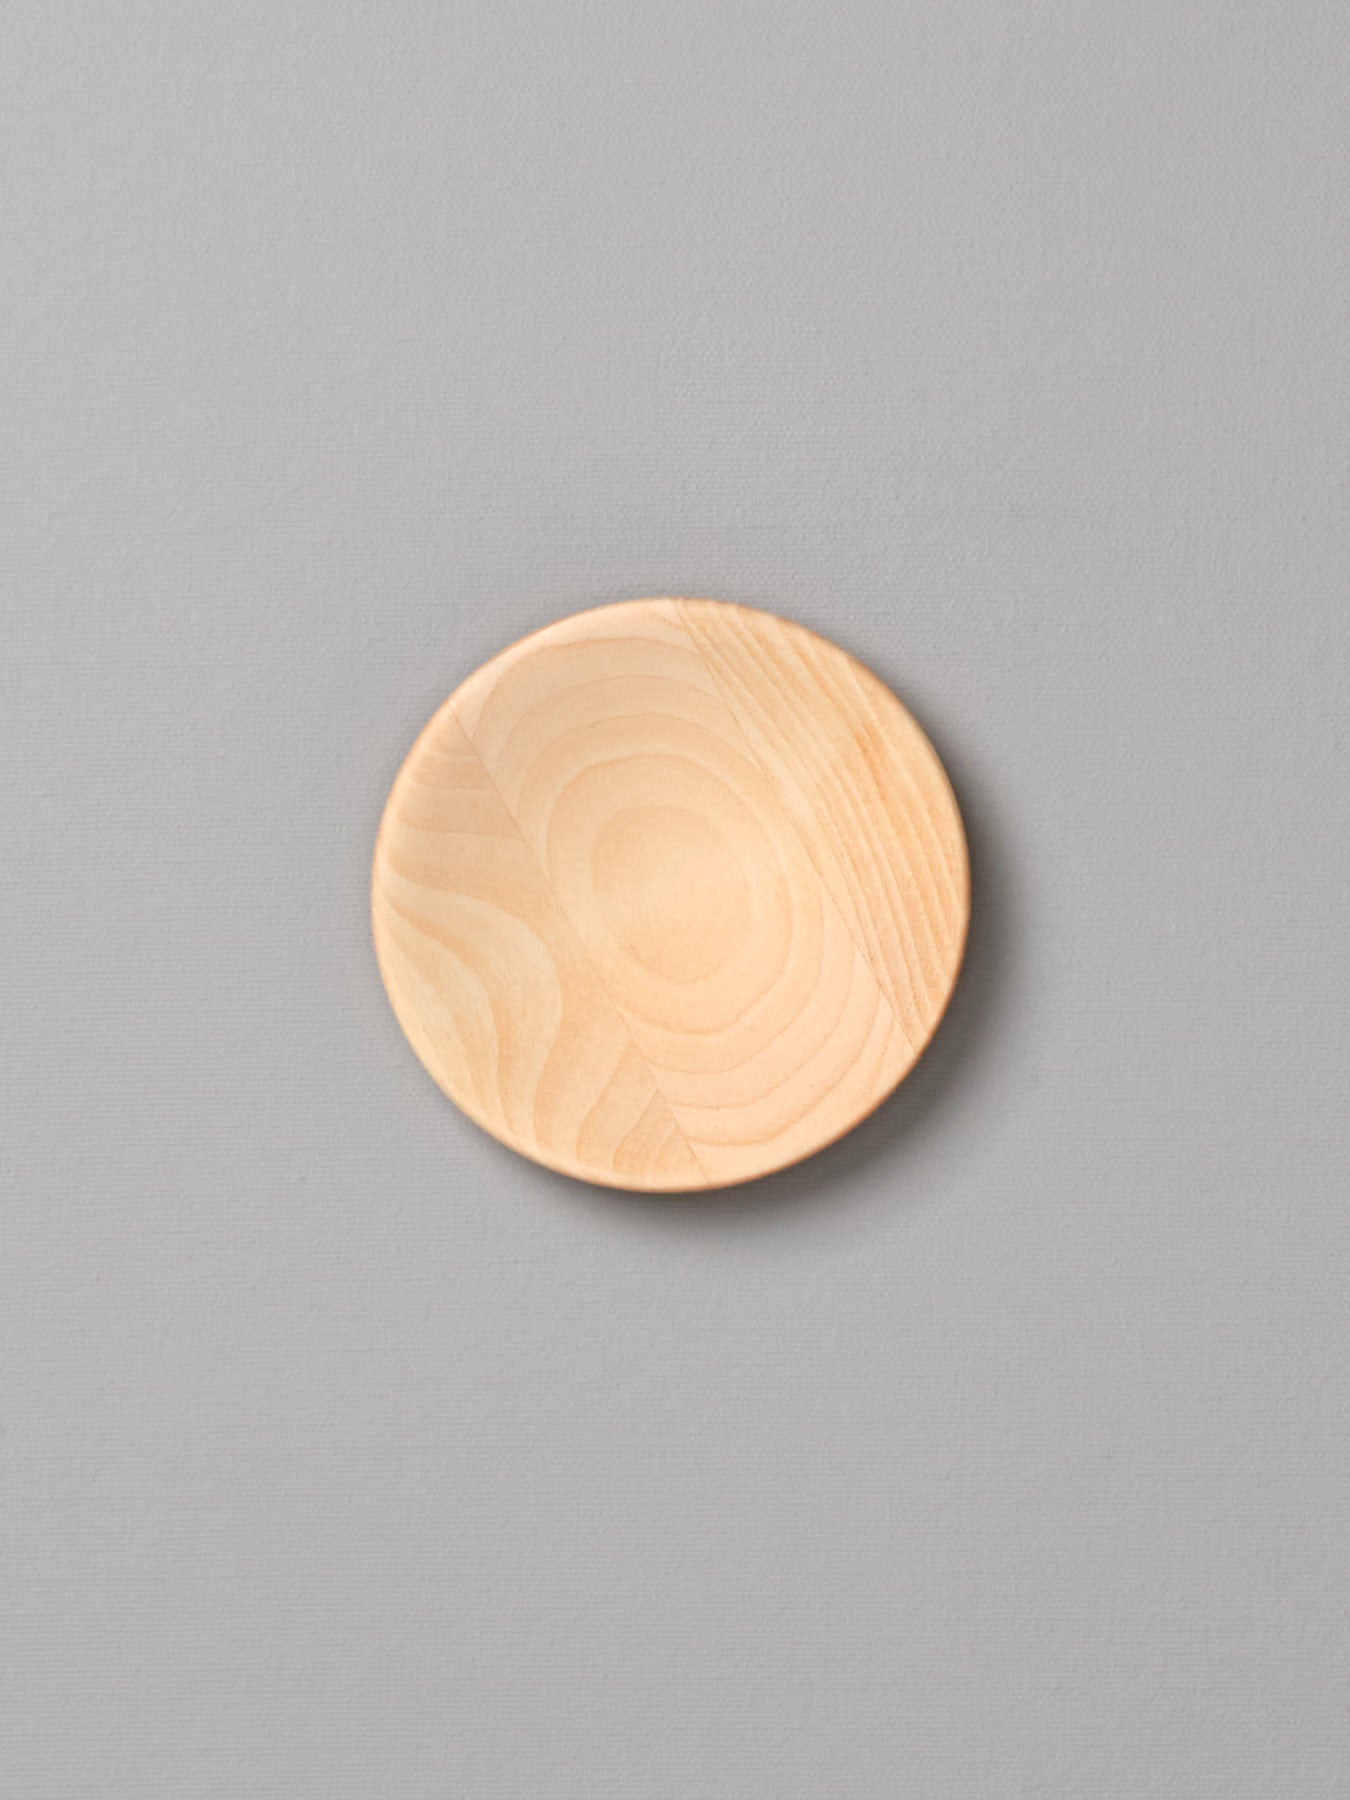 An Iris Hantverk small wooden plate on a gray background.